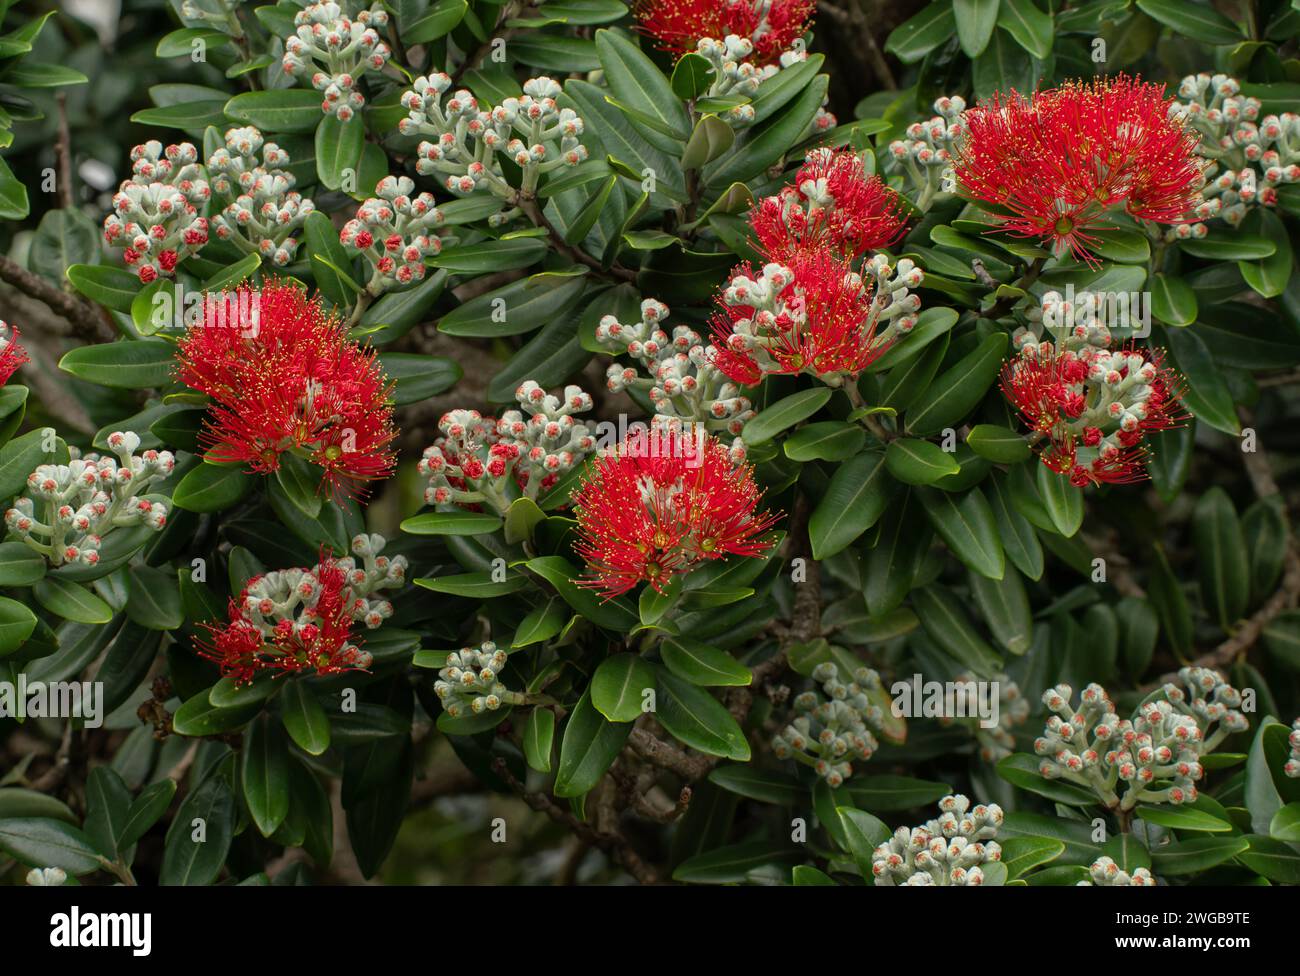 New Zealand Christmas tree, Metrosideros excelsa in full flower in midsummer. Stock Photo